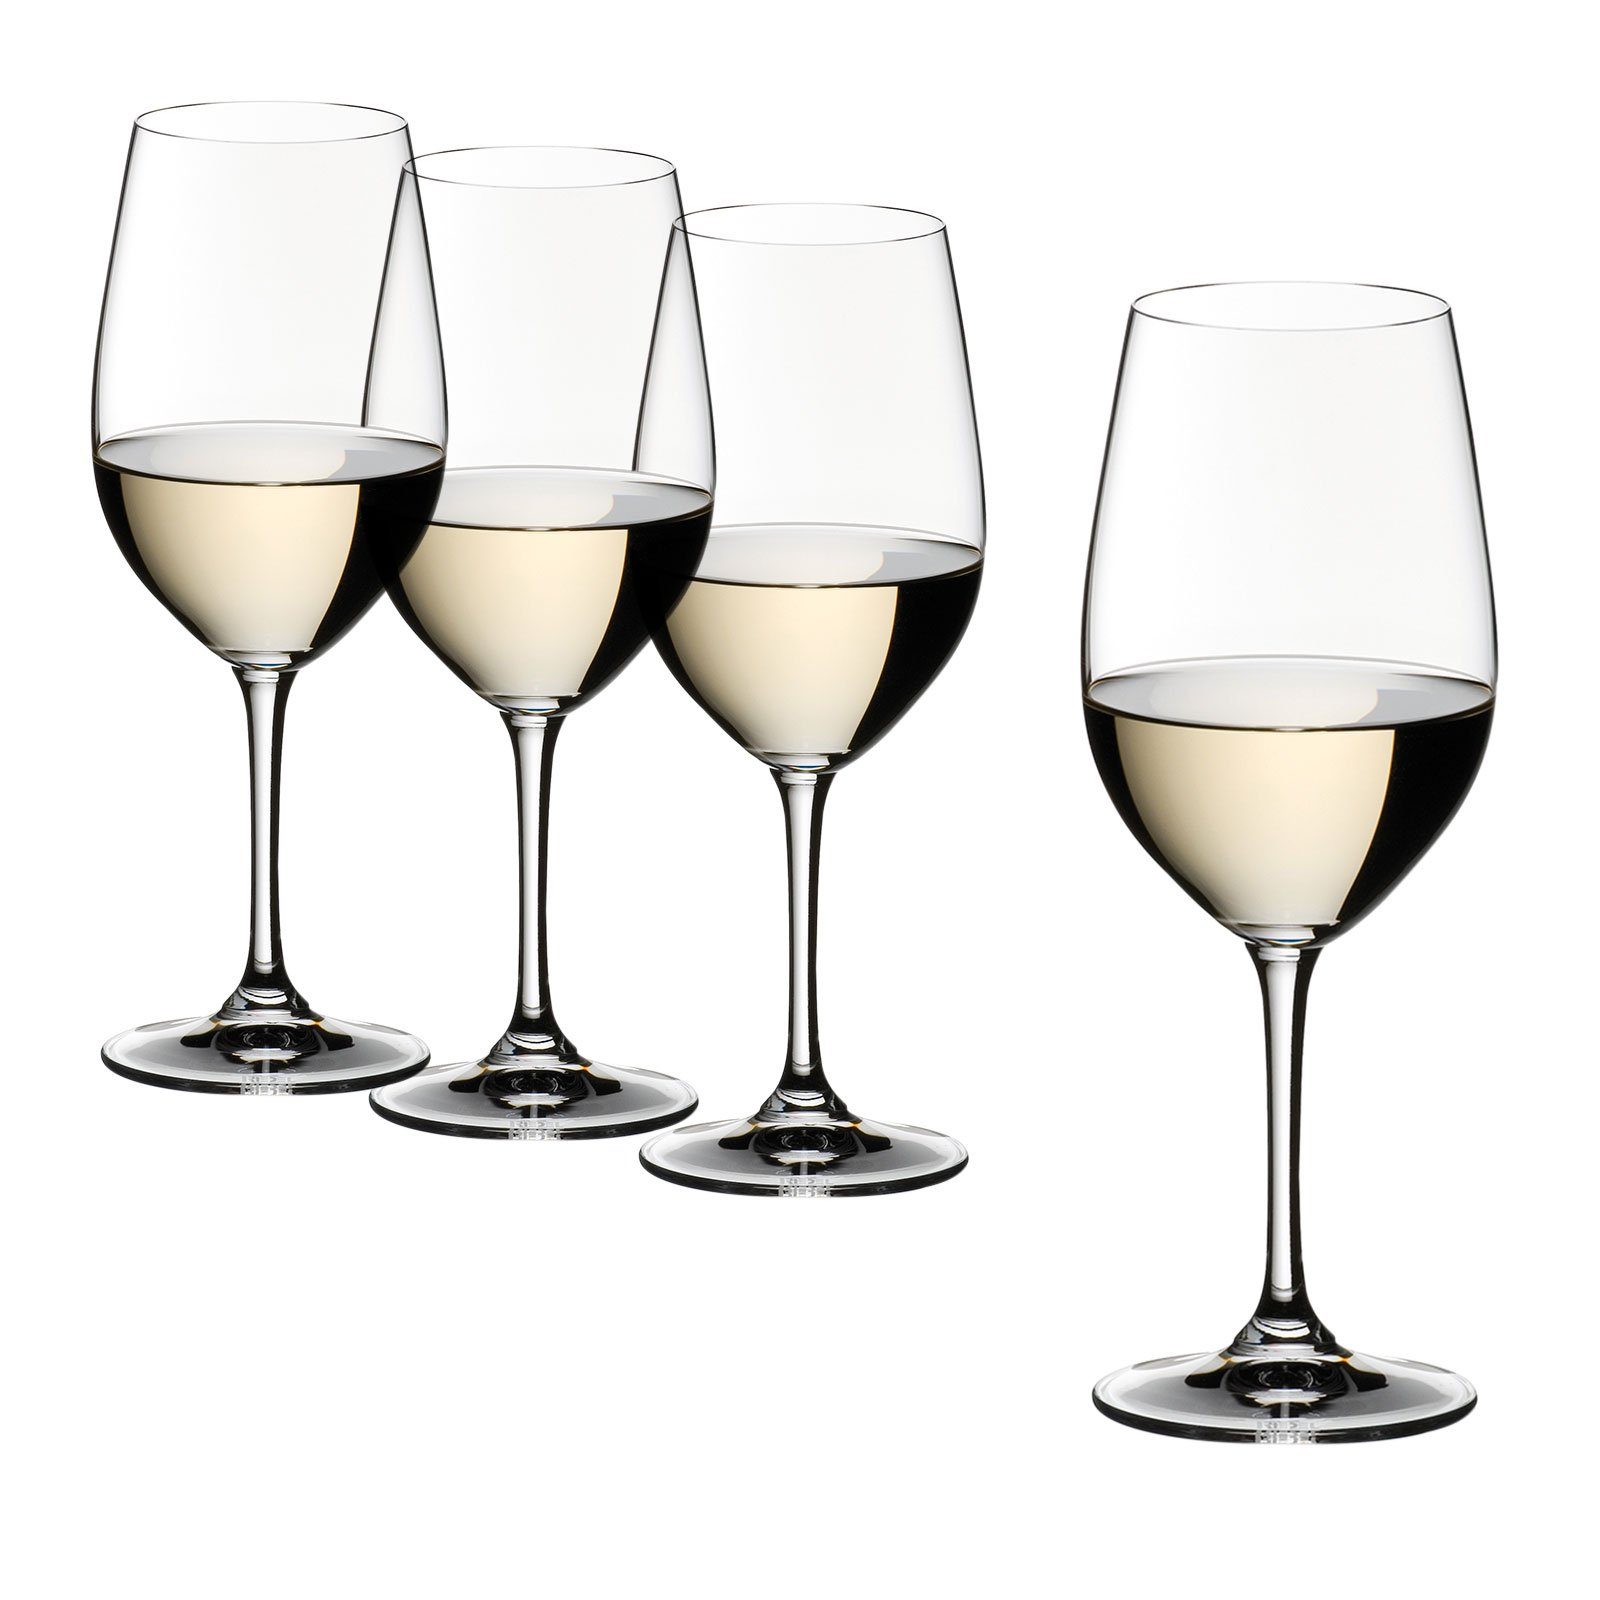 RIEDEL Glas Weinglas Vinum Riesling Zinfandel 4er Set, Kristallglas